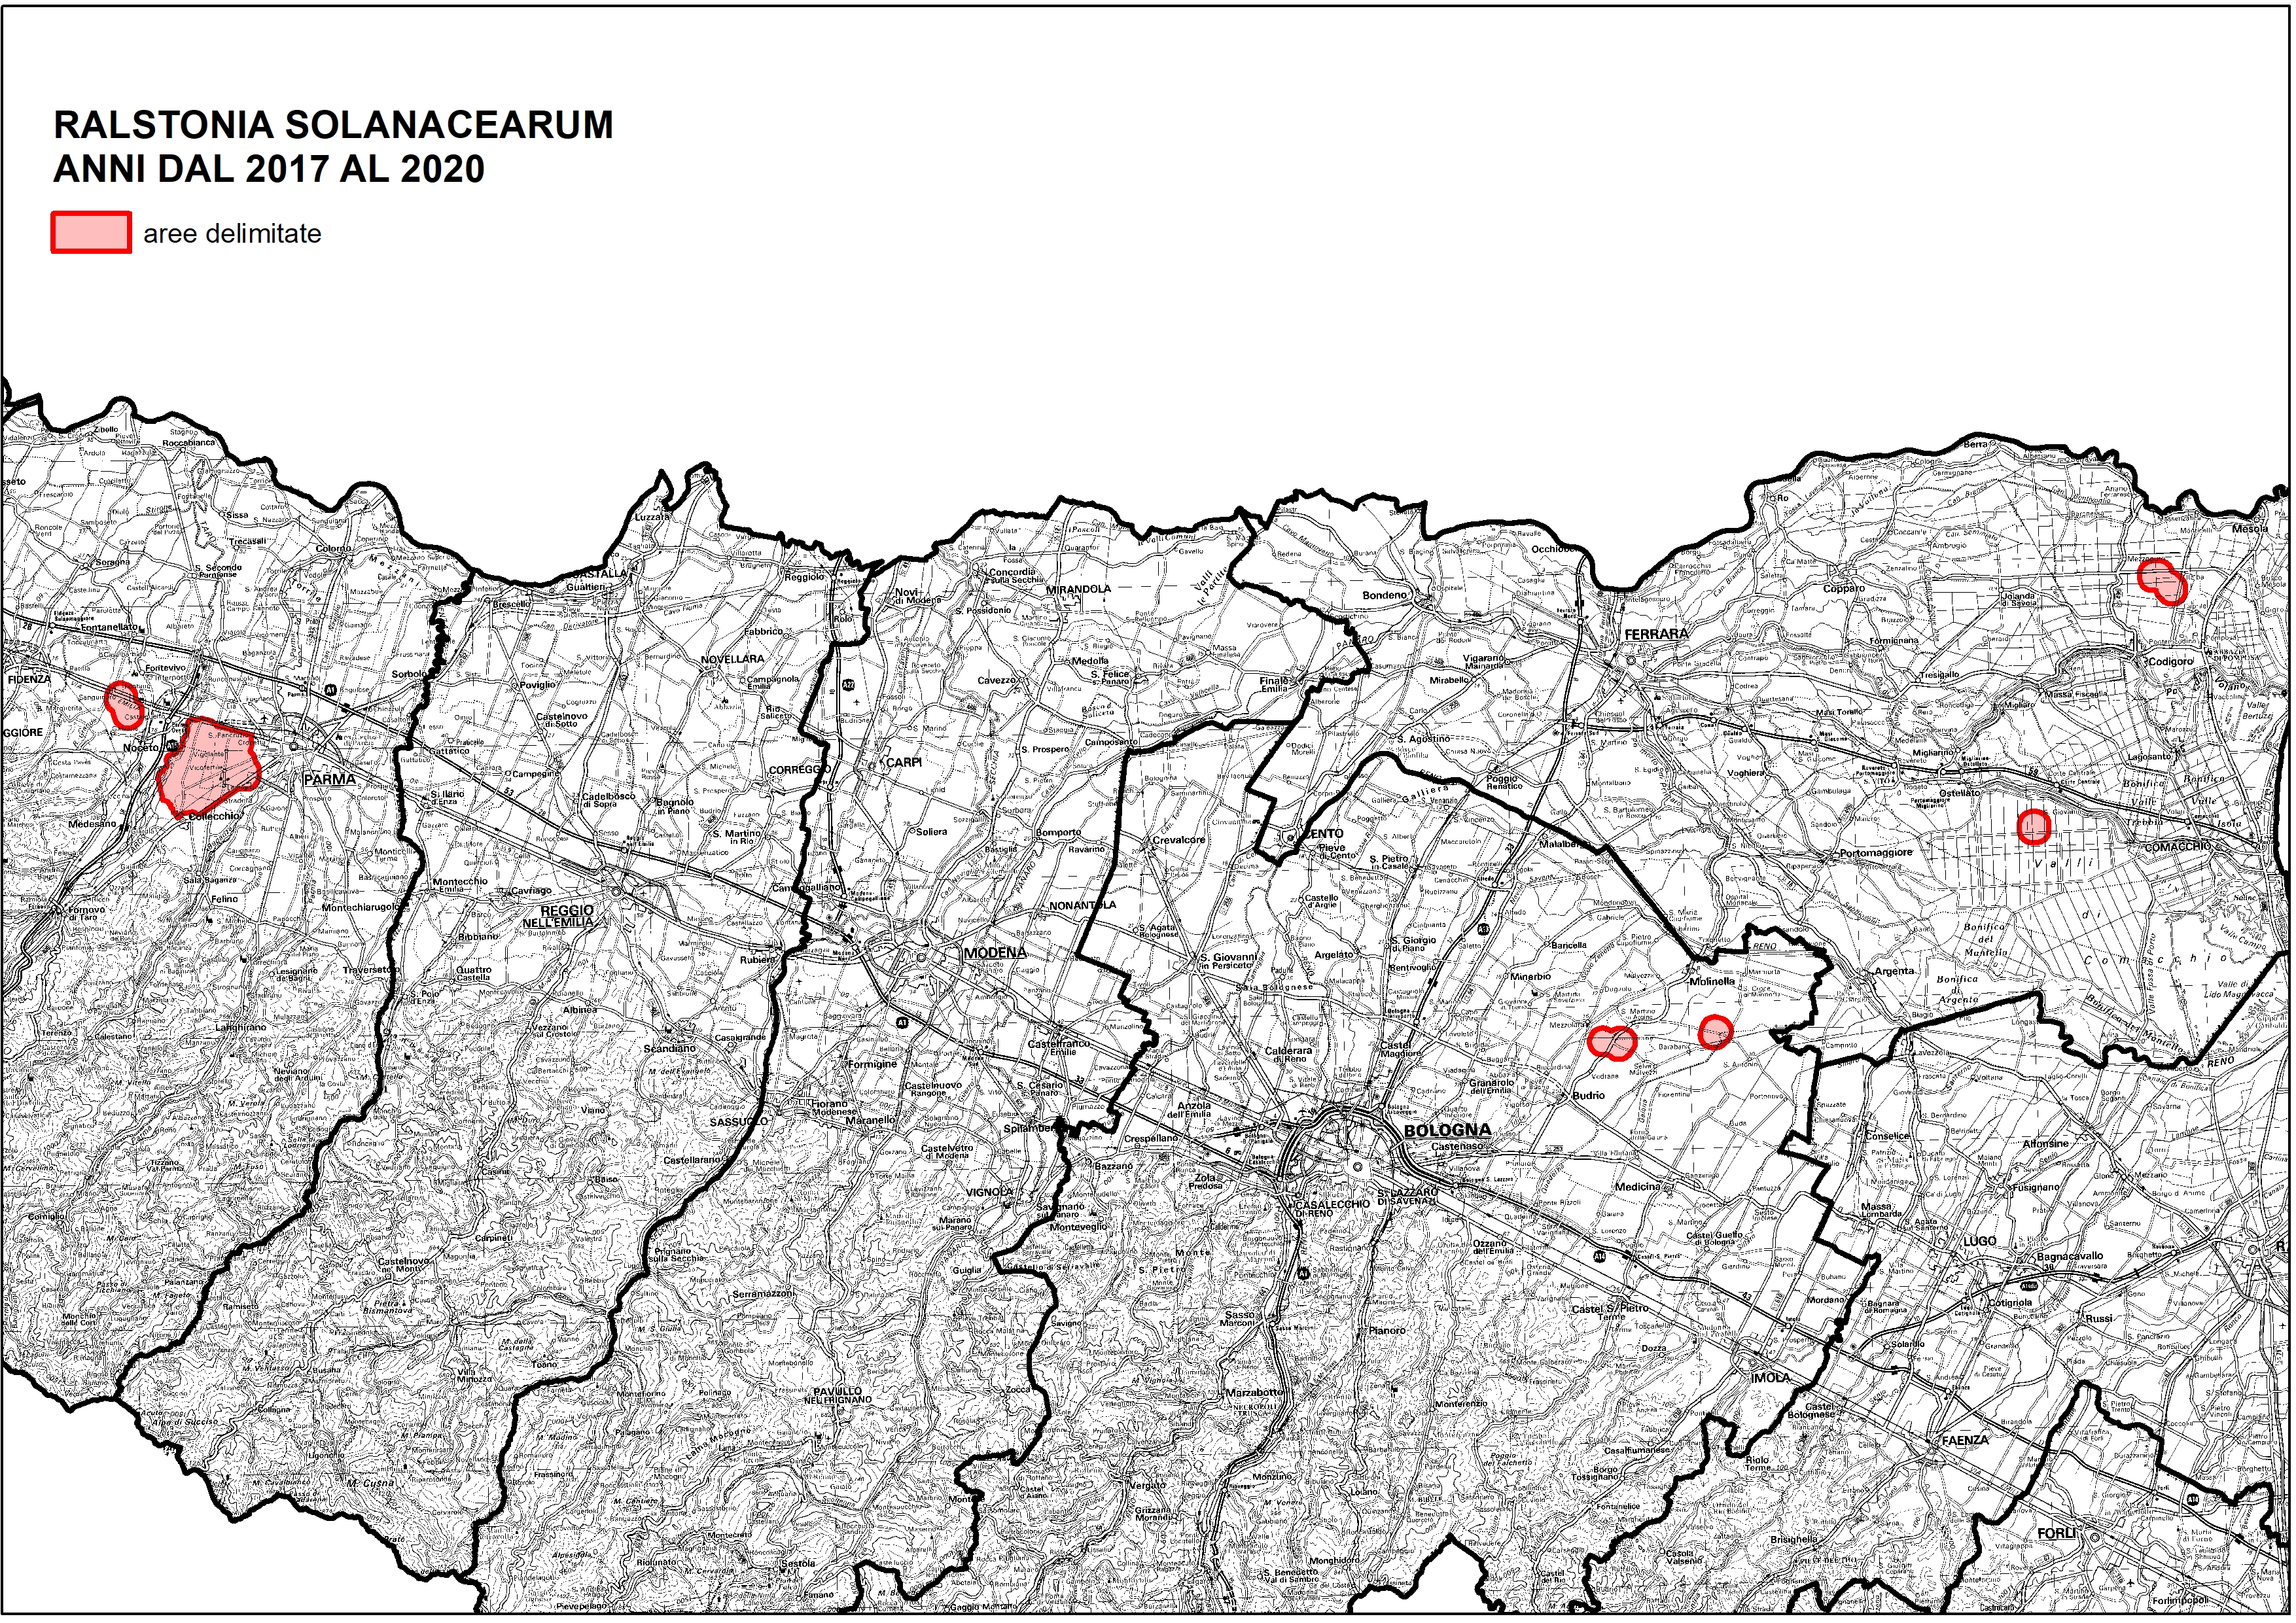 Mappa-aree-delimitate-ralstonia-2020.jpg